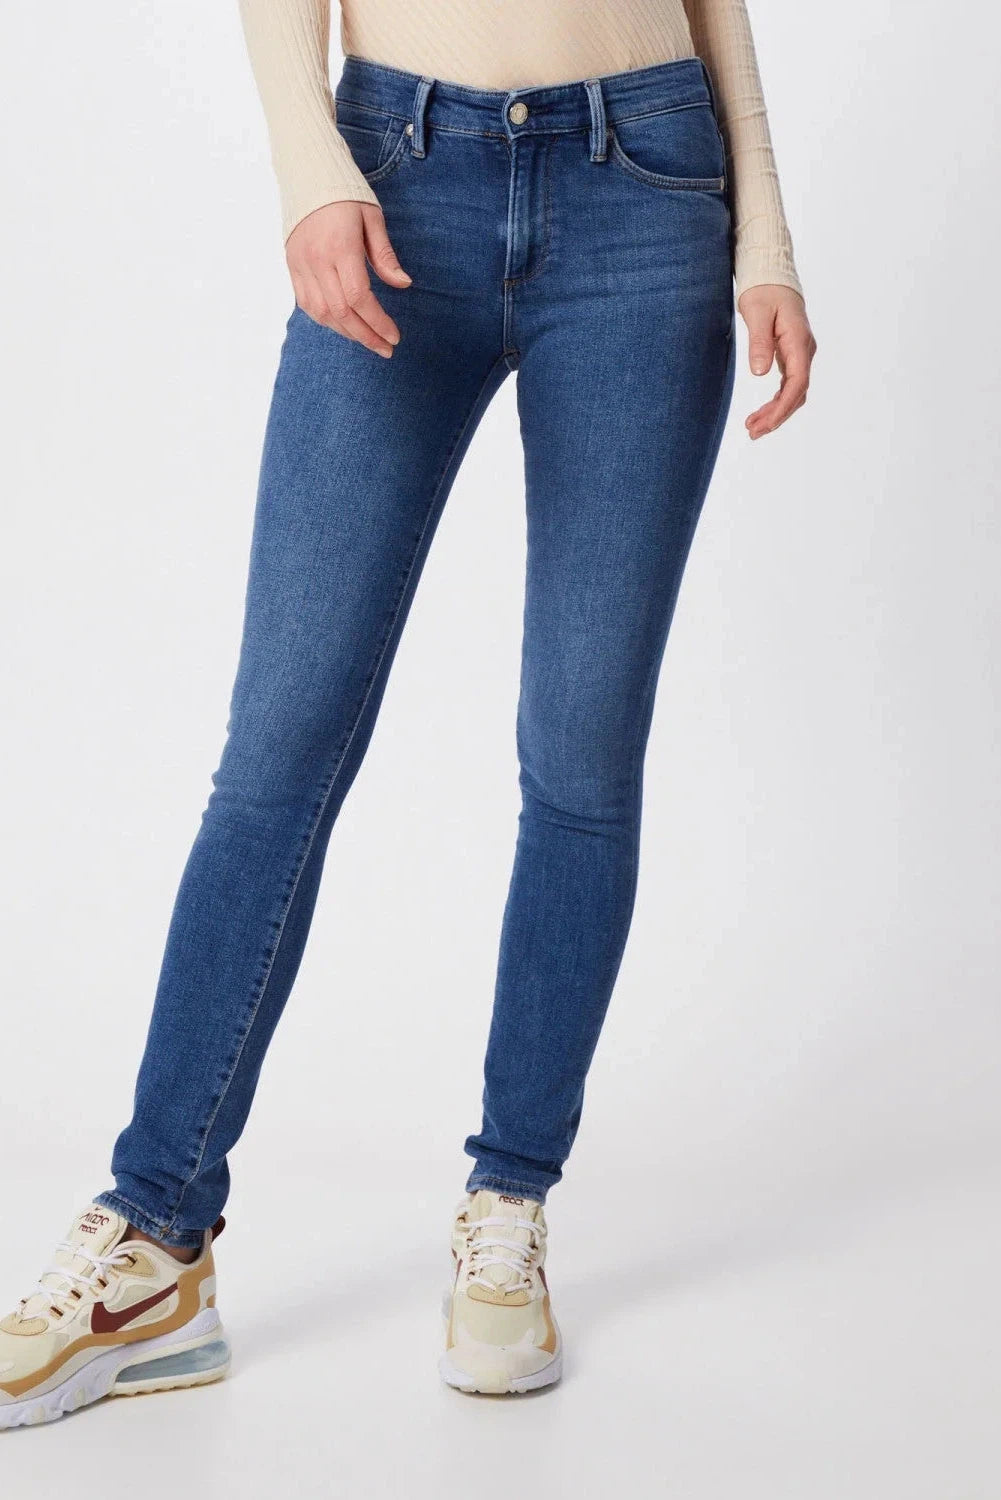 S.Oliver Blue Denim Skinny Jeans / 6 / Reg